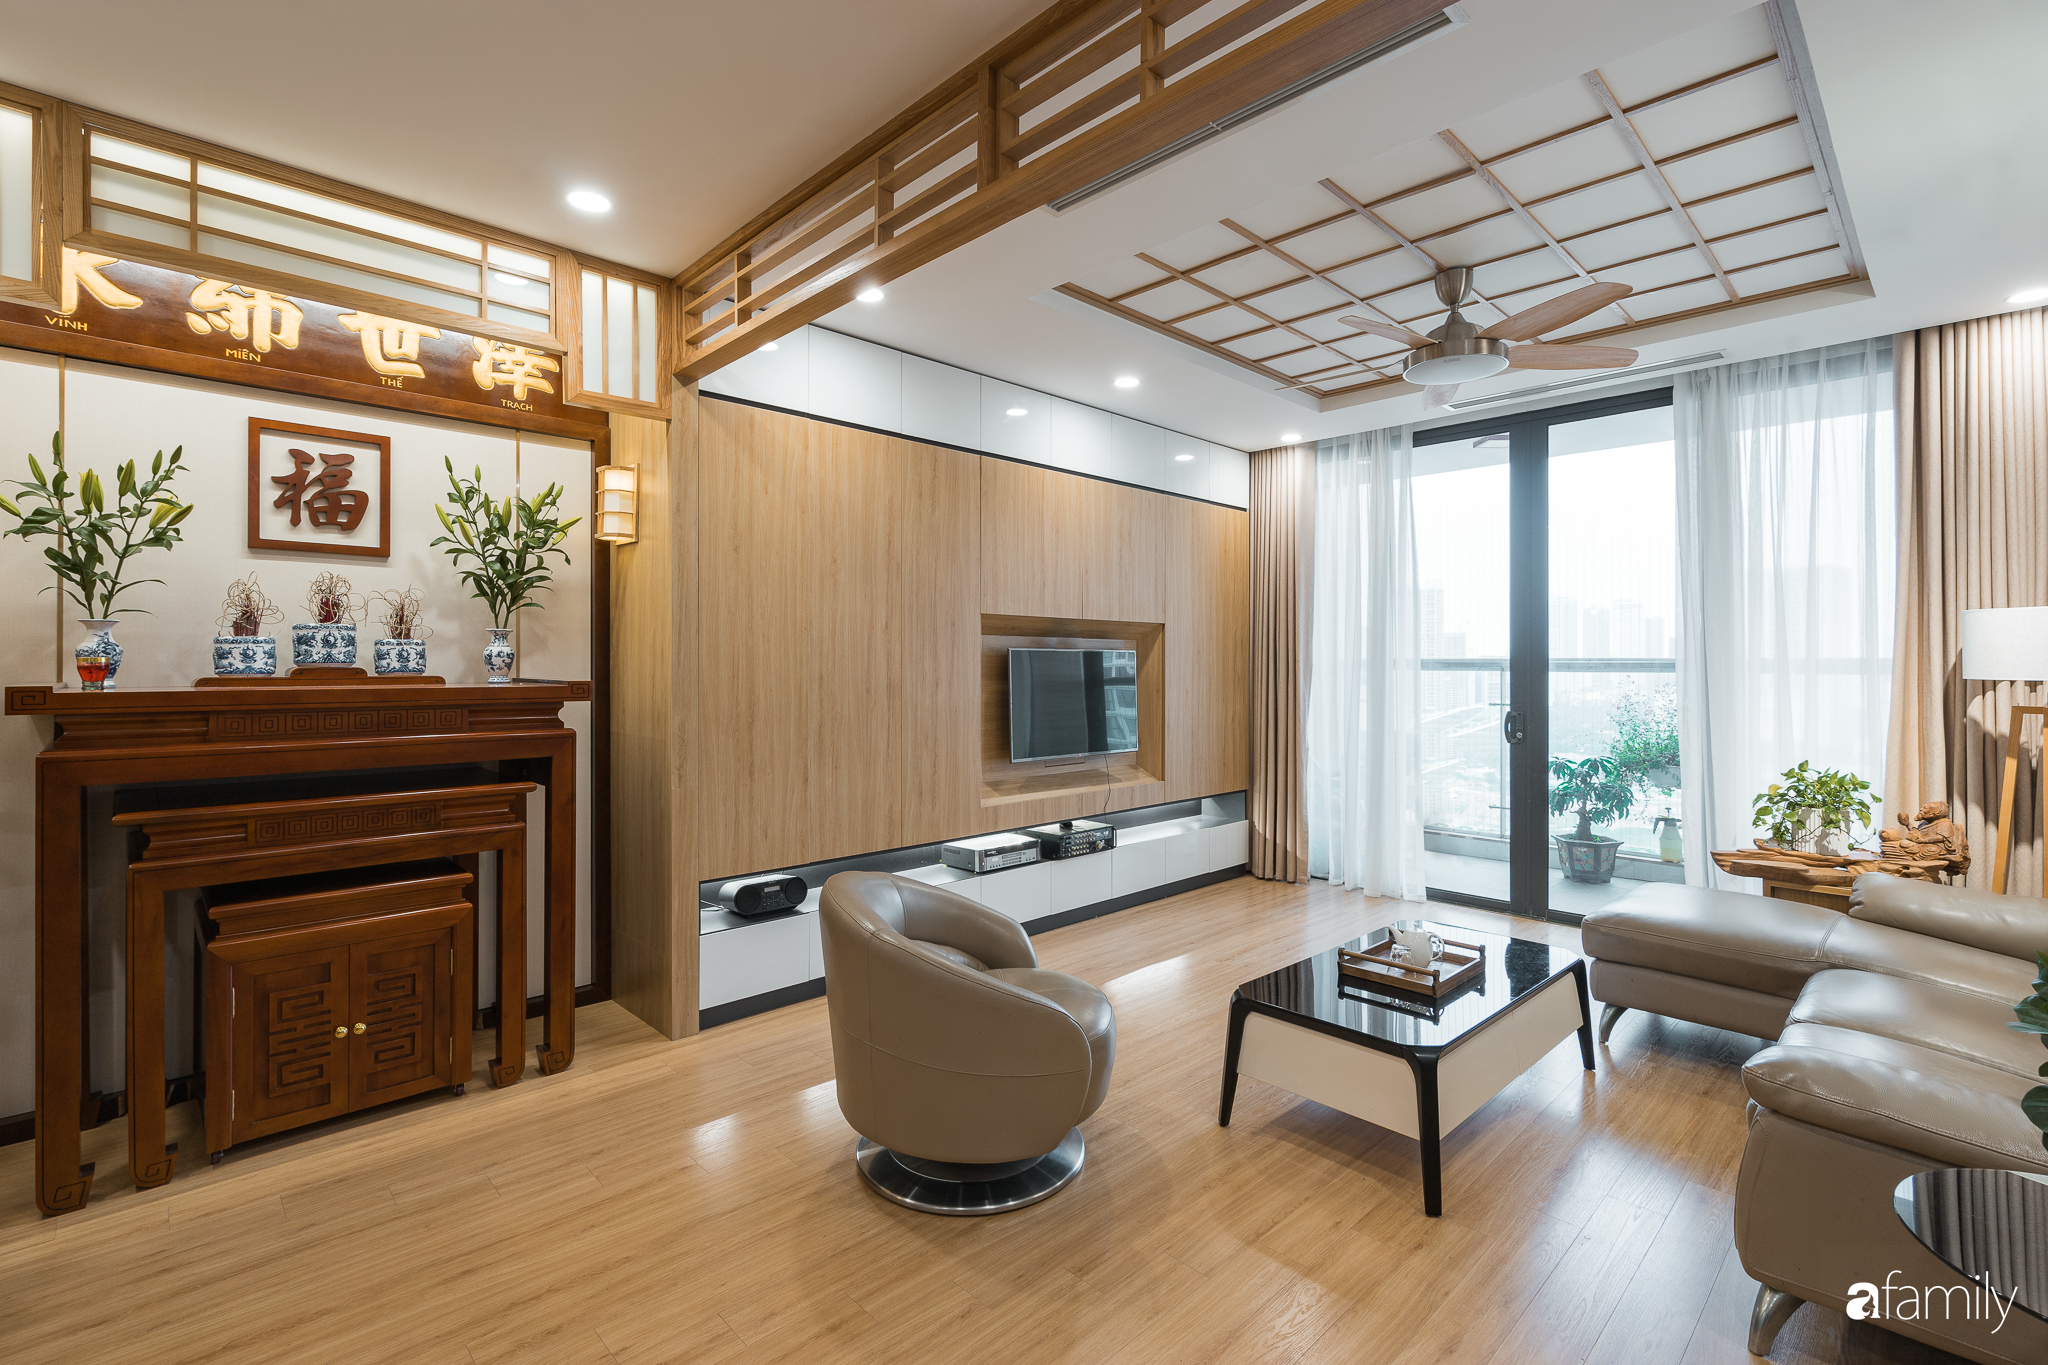 Thiết kế nội thất chung cư kiểu Nhật Bản đẹp: Với phong cách thiết kế nội thất kiểu Nhật Bản đẹp, không gian sống của bạn sẽ tràn ngập ánh sáng, tối đa hóa không gian nhà để tạo cảm giác thoáng đãng. Đồng thời, sự kết hợp hài hòa giữa các yếu tố thiết kế và màu sắc sẽ đem lại cảm giác yên bình, thư thái cho gia chủ.